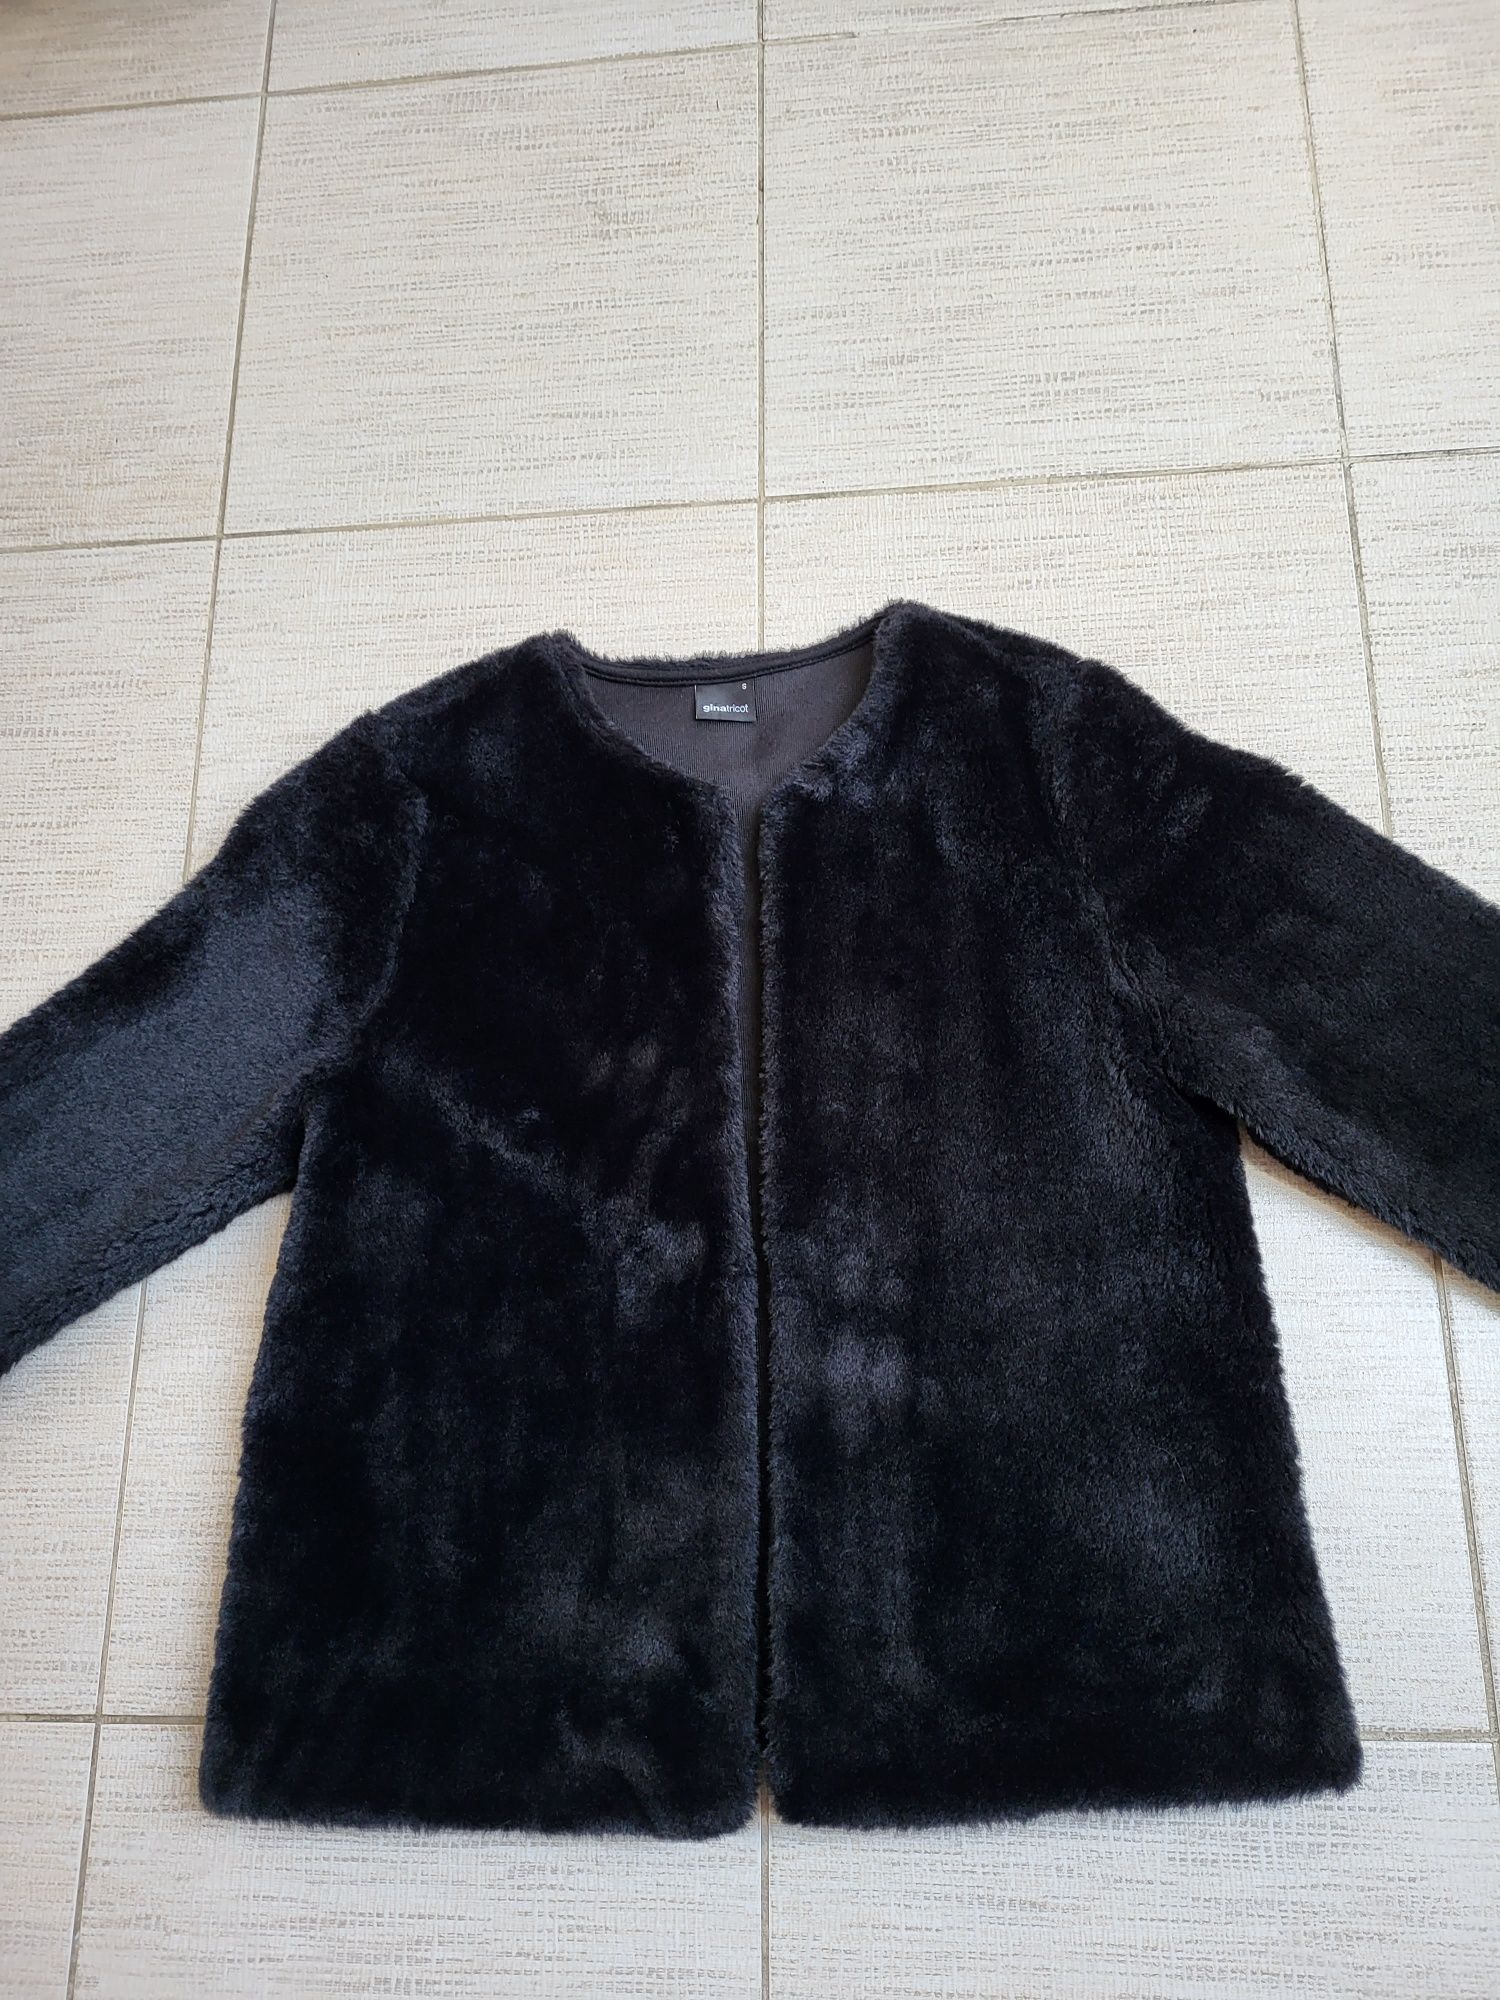 krótka kurtka zimowa, sztuczne futerko, kożuszek Gina Tricot 36/S jak